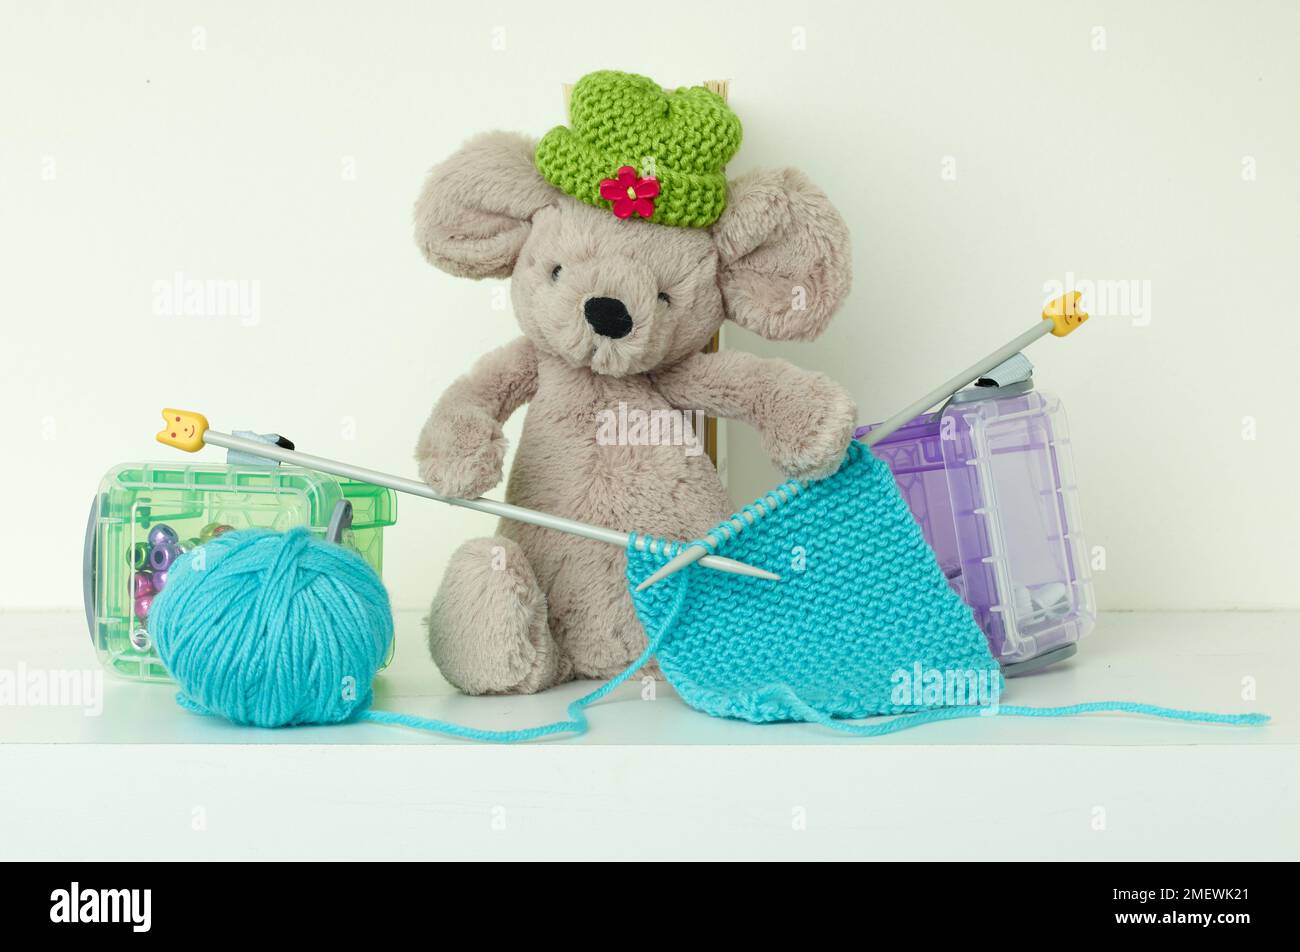 Mouse giocattolo con cappello verde in maglia, con aghi in maglia di lana blu Foto Stock